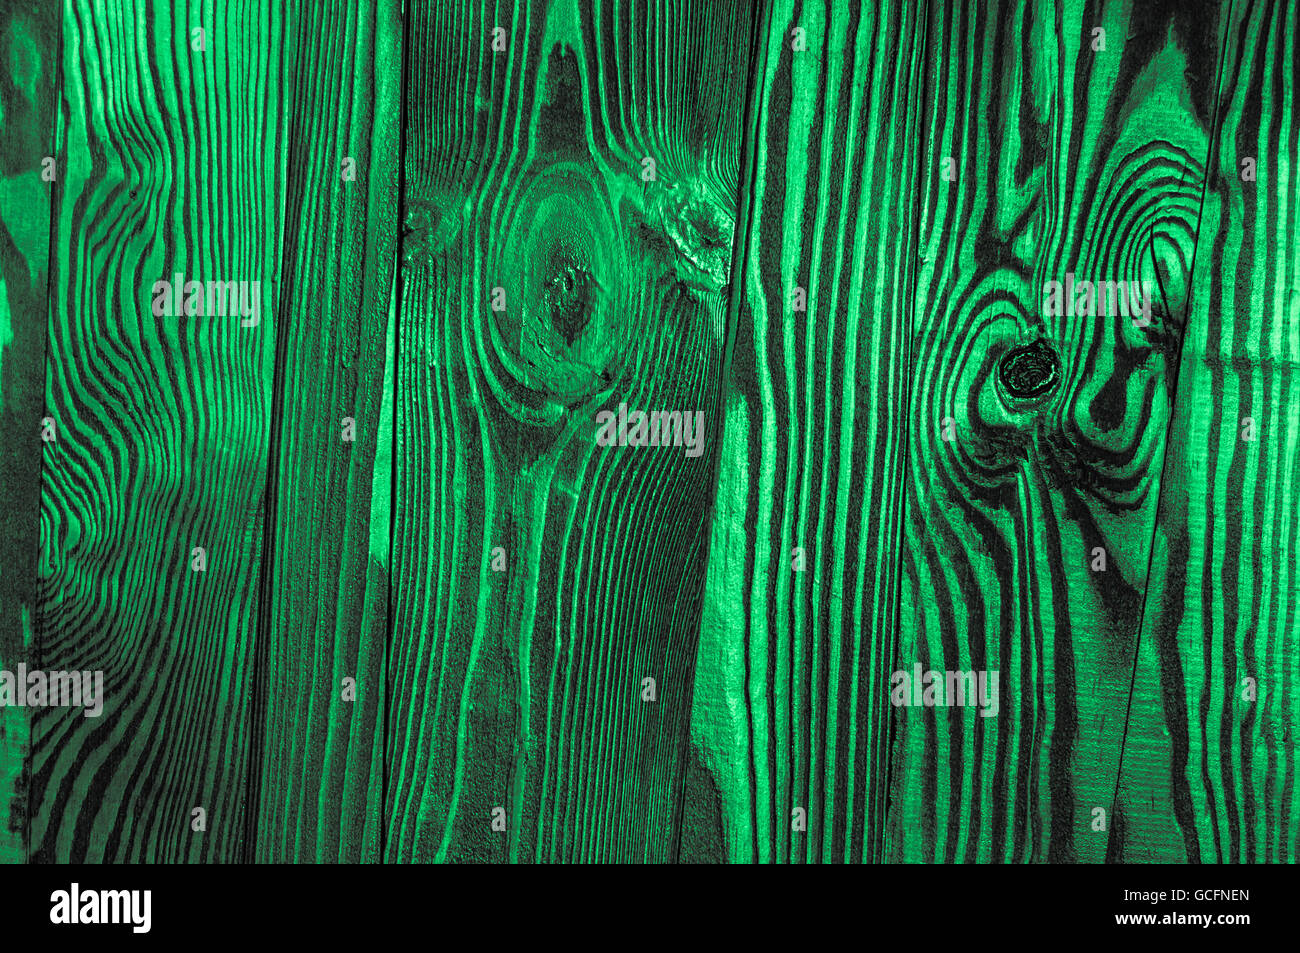 Perfetto verde menta luce grigiastra irregolari di colore verdastro vecchio legno lucido scuro superficie di legno sfondo texture Foto Stock